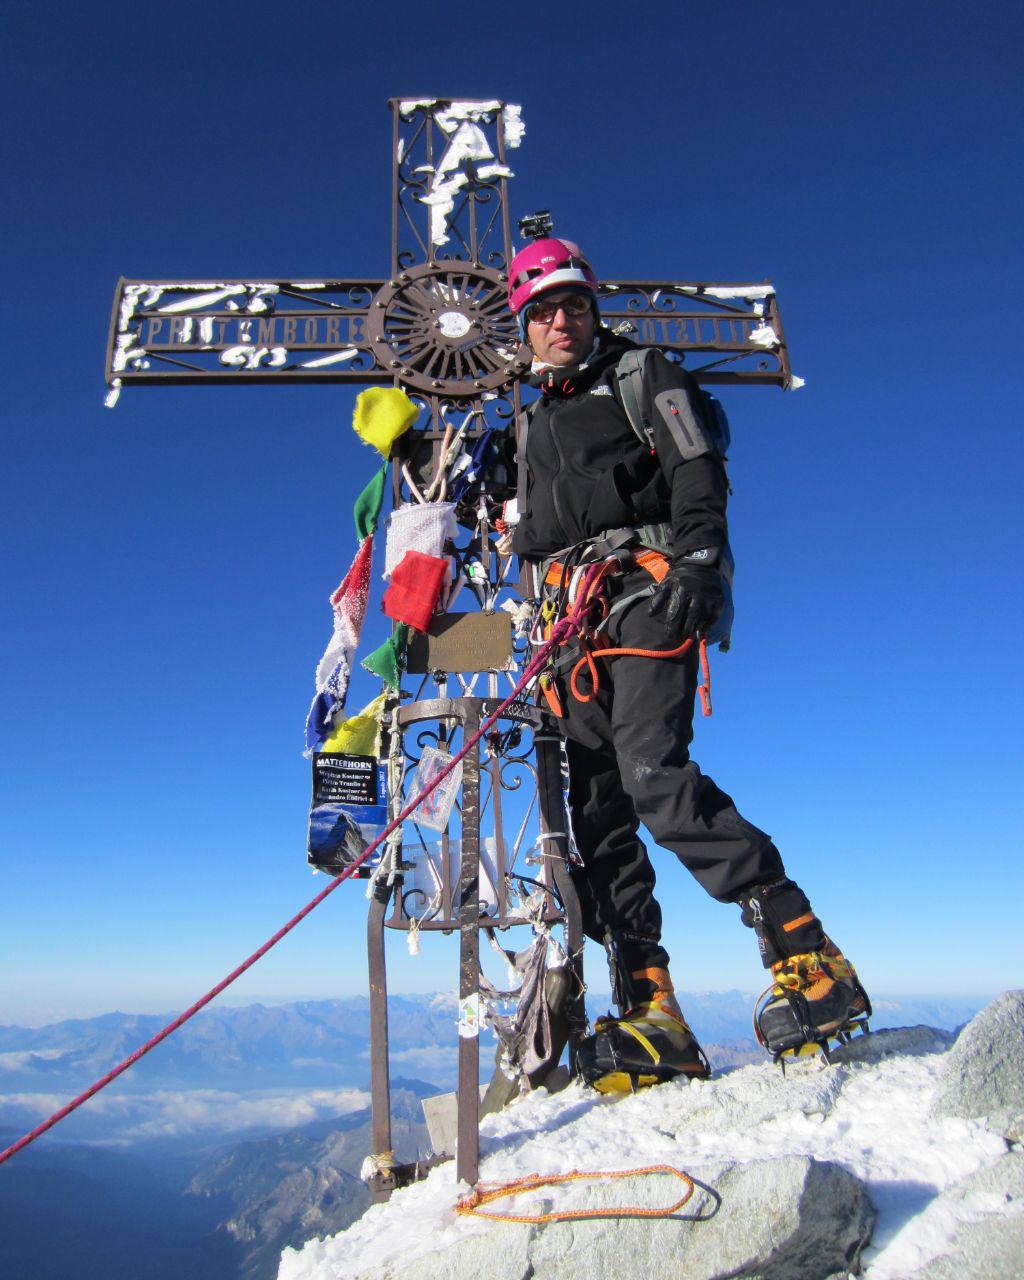 نشست دوشنبه ۱۱ دی ماه ۹۶ باشگاه کوهنوردی و اسکی دماوند